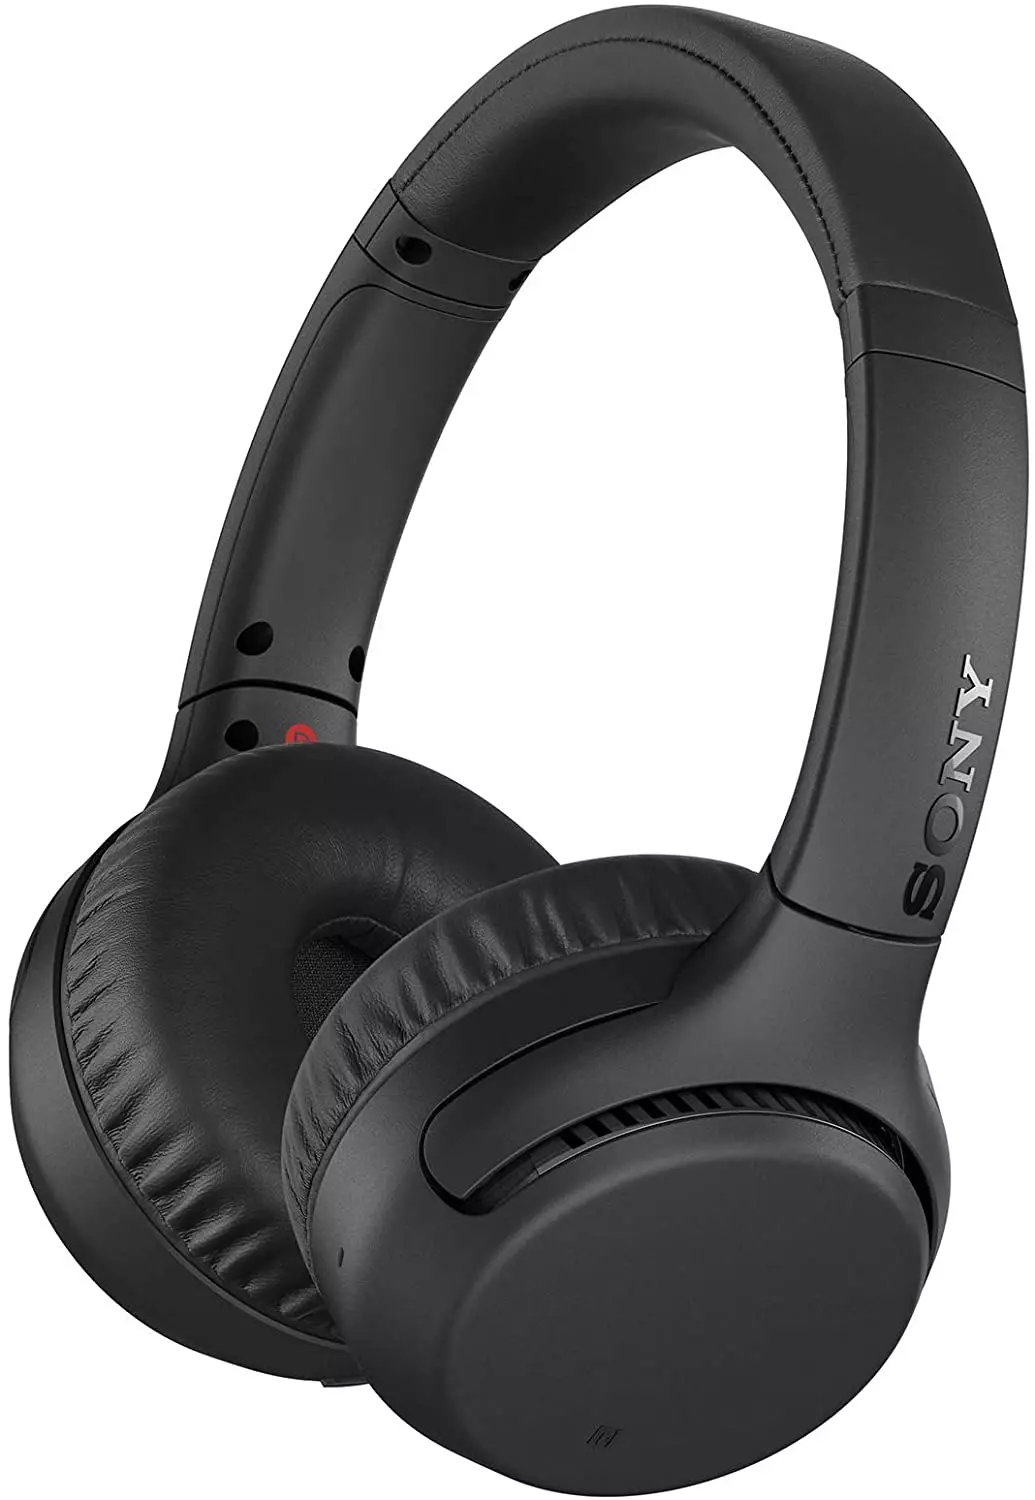 Sony Wh-Xb700 หูฟังไร้สายฯทรง On-Ear รองรับ Aptx แบตฯอึด เบสดุ มีชาร์จเร็ว  รีวิวชัด คัดของดี สั่งง่าย ส่งไว ได้ของชัวร์